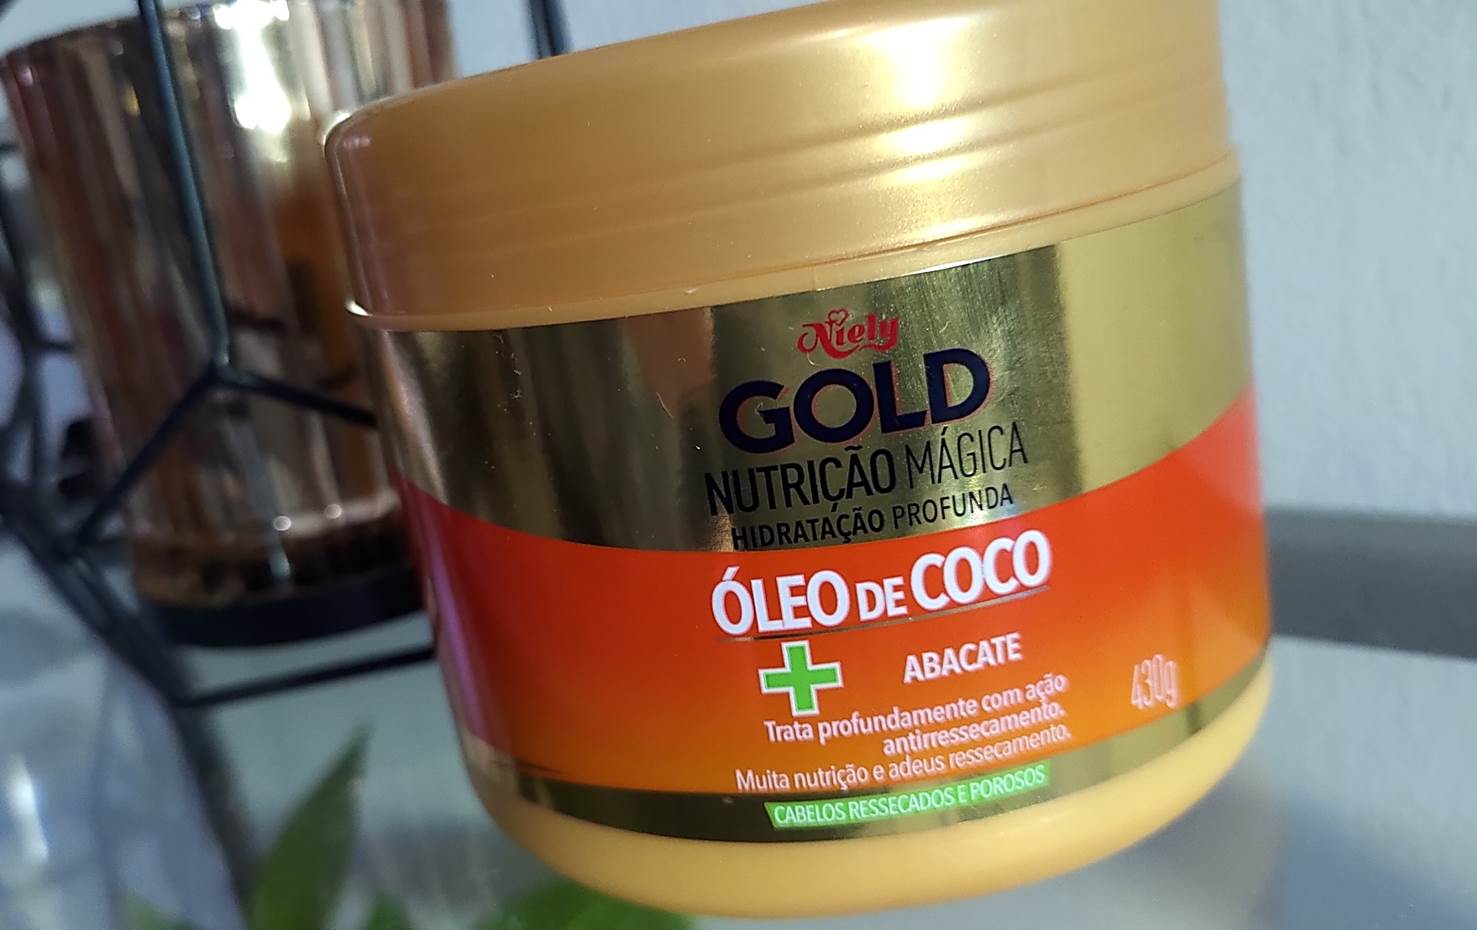 NIELY GOLD ÓLEO COCO + ABACATE – NUTRIÇÃO MÁGICA!